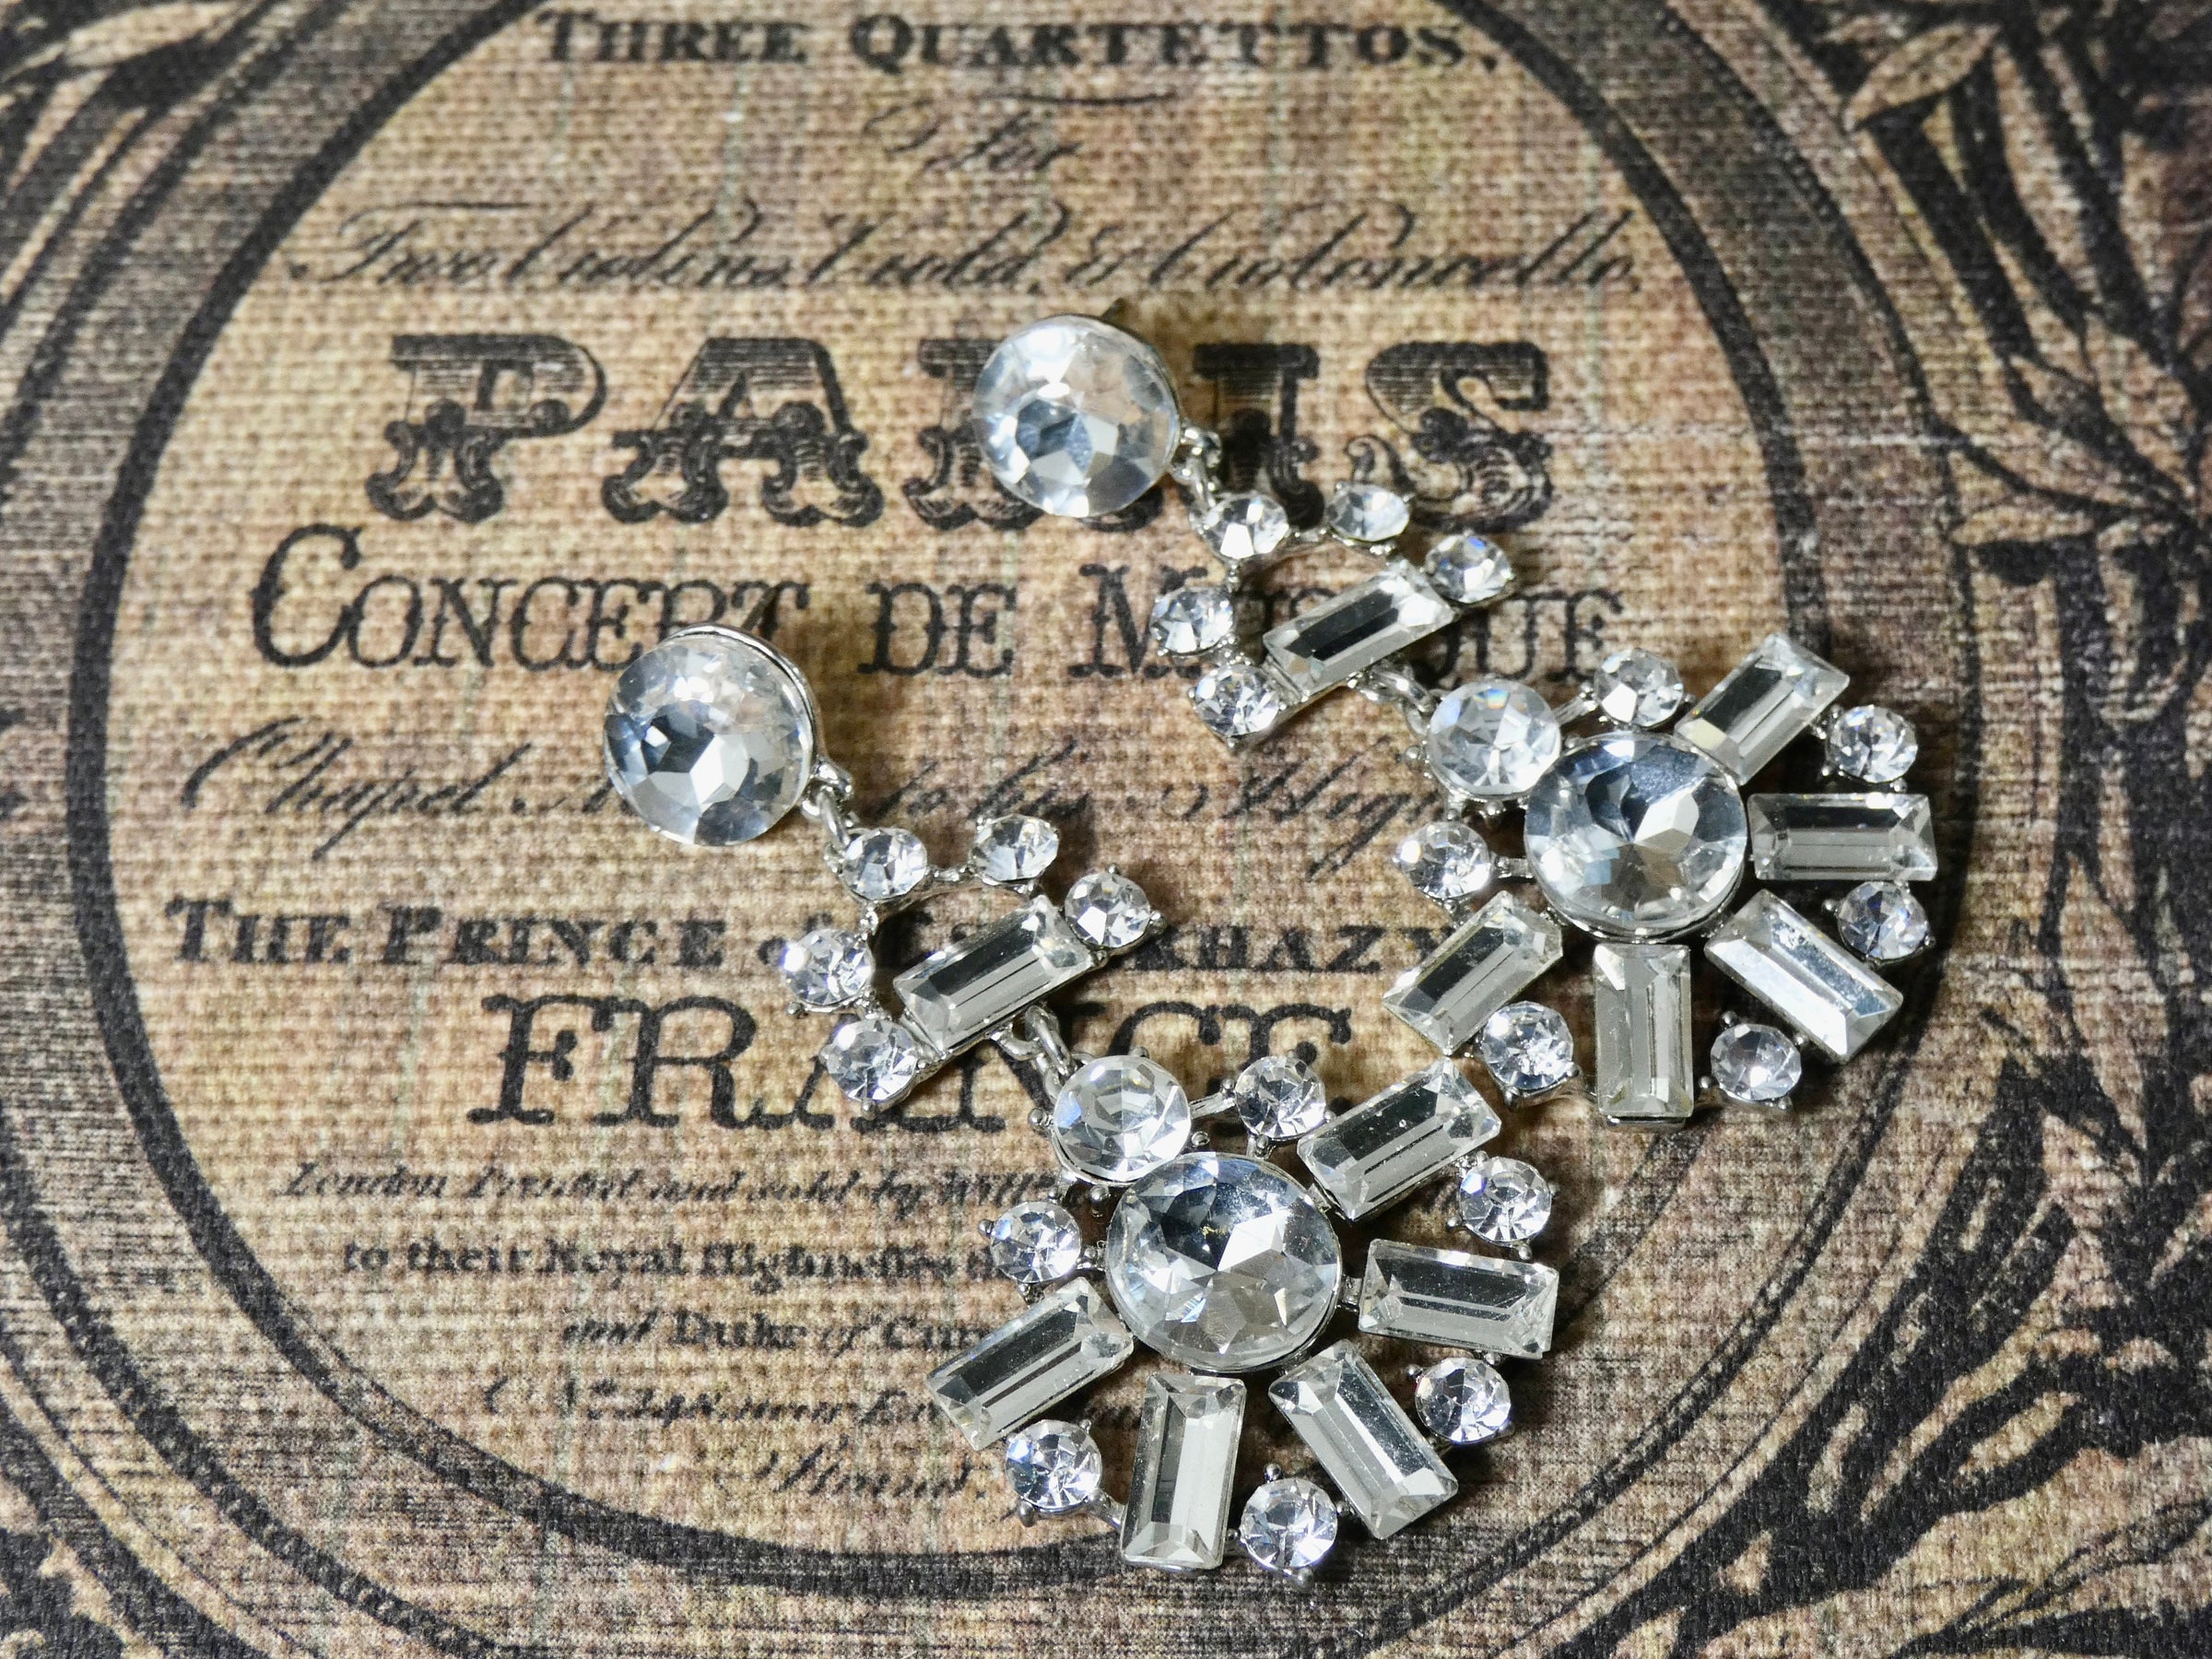 Silver Crystal Earring, Pierced Dangle Earring, a showstopper earring